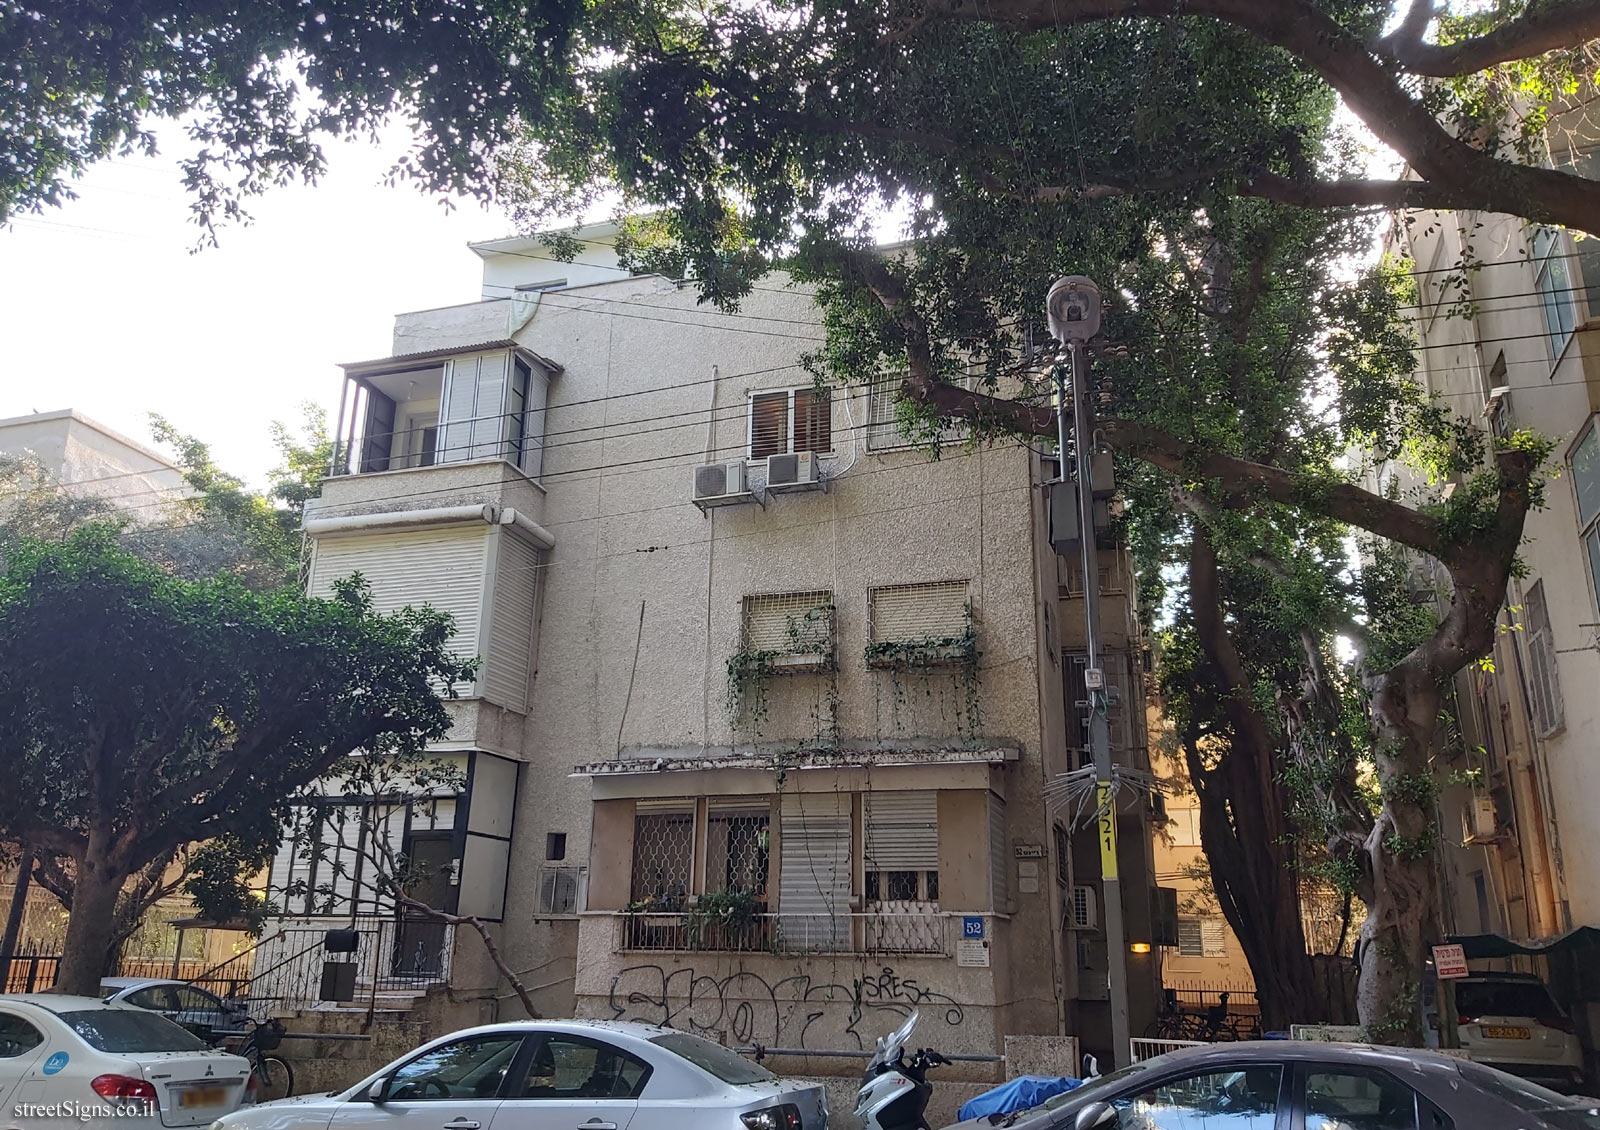 The house of Ada Ben Nahum - HaRav Reines St 52, Tel Aviv-Yafo, Israel